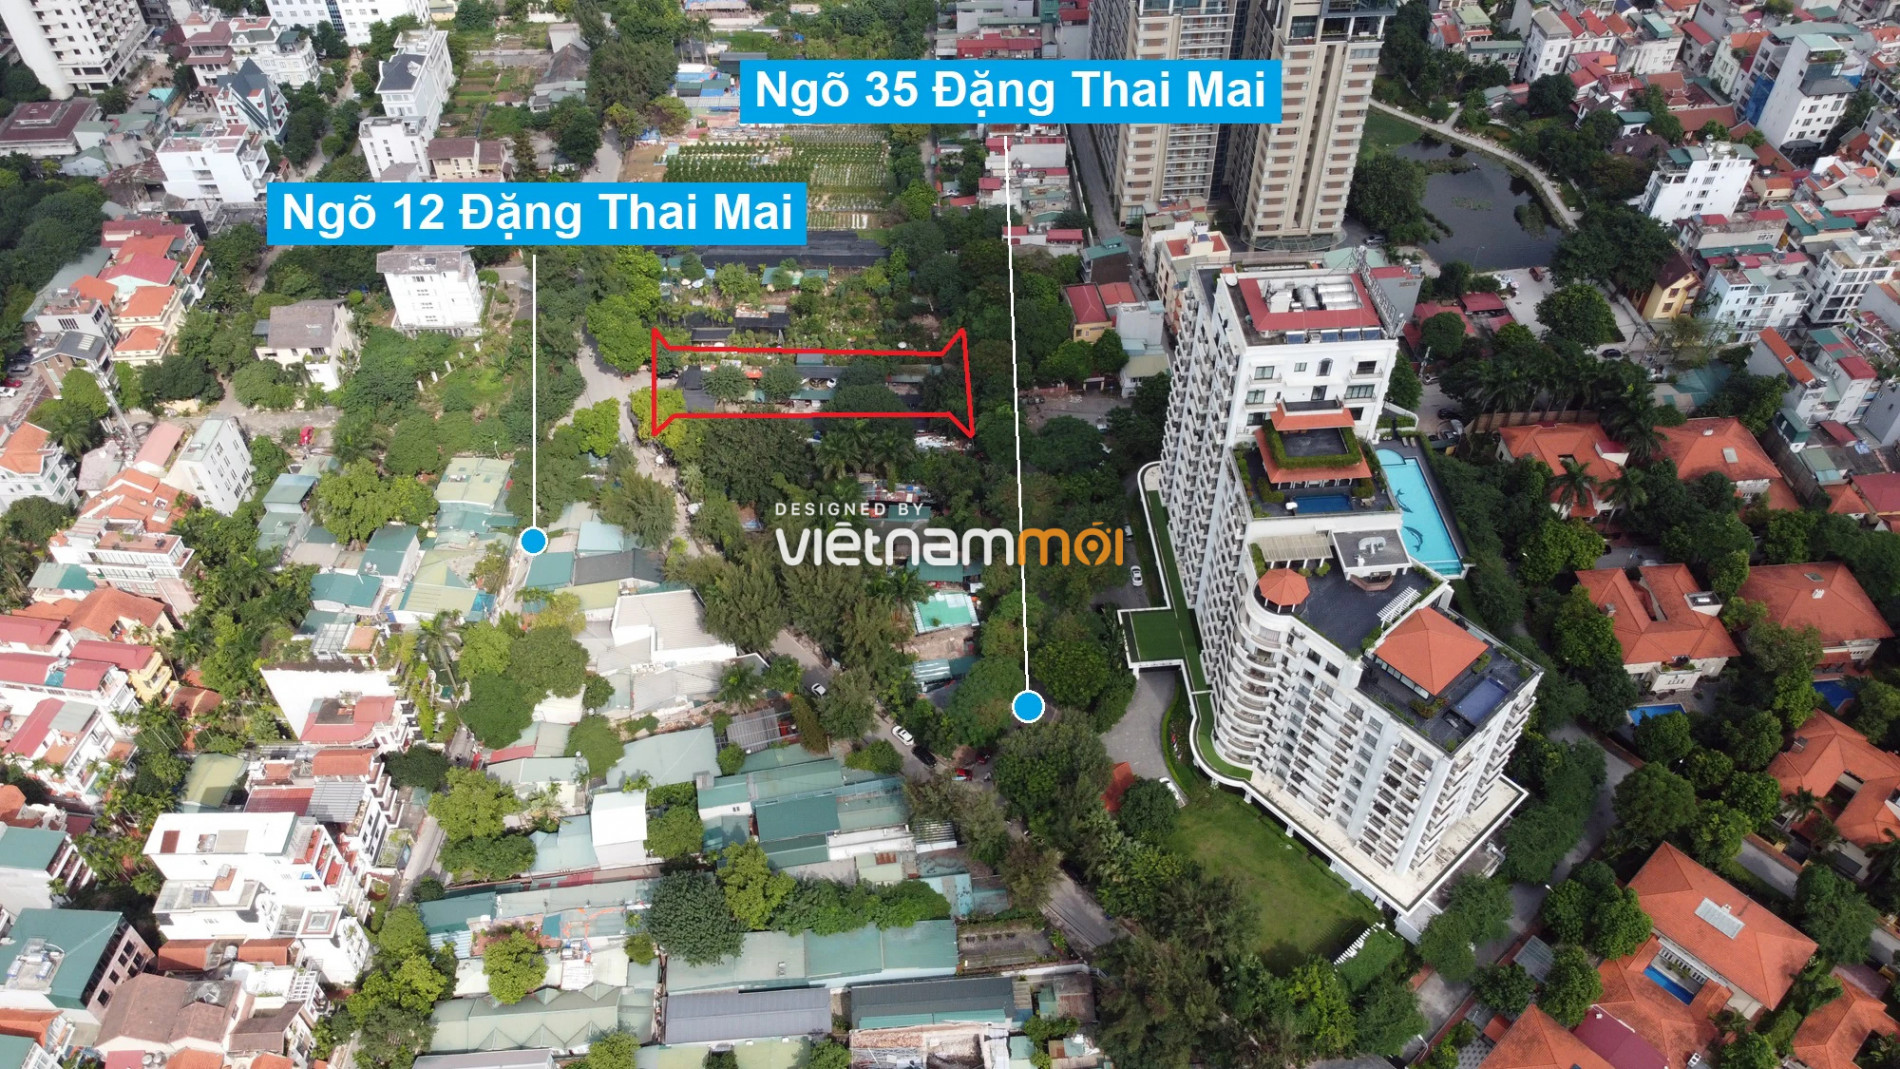 Những khu đất sắp thu hồi để mở đường ở quận Tây Hồ, Hà Nội (phần 5) - Ảnh 17.